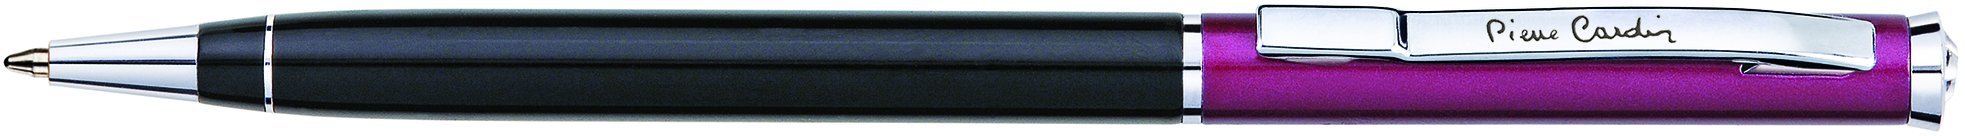 Шариковая ручка Pierre Cardin Gamme черный/вишневый лак, хром